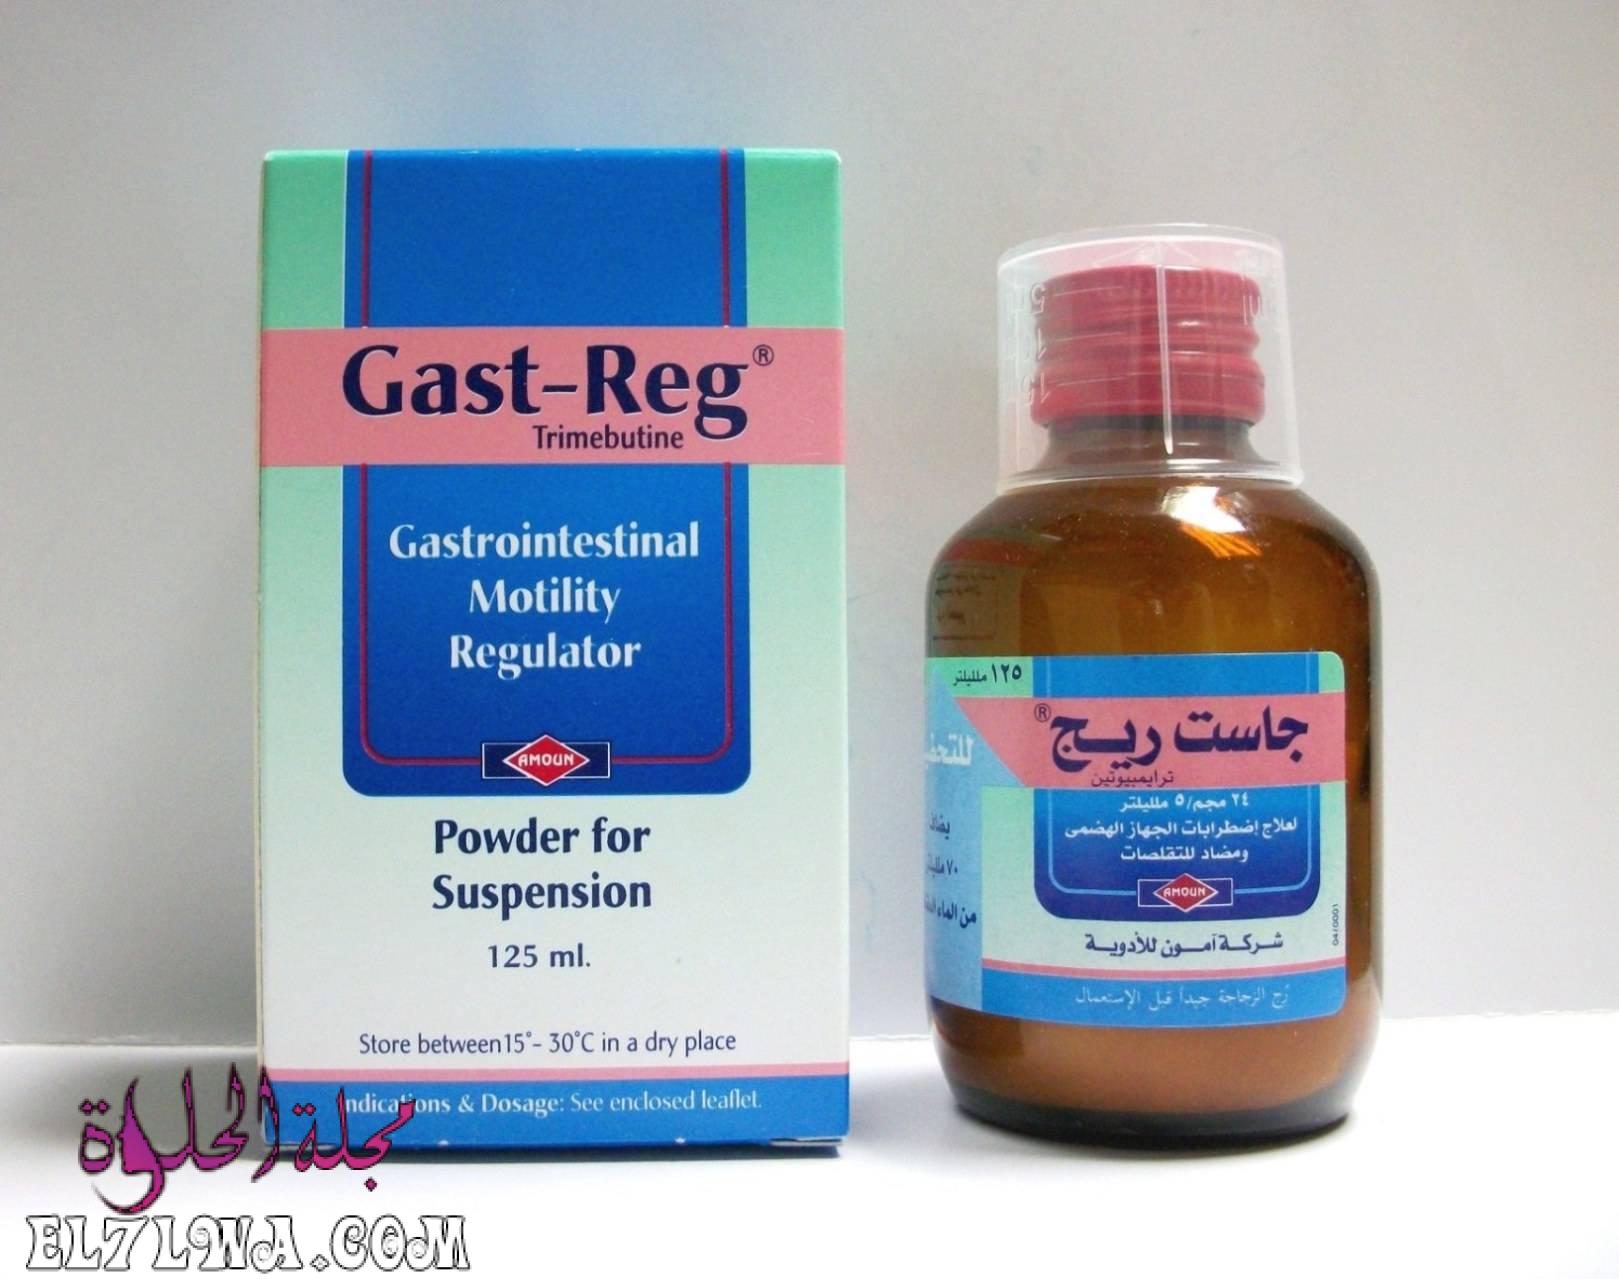 جاست ريج Gast Reg لعلاج القولون العصبي واضطرابات الجهاز الهضمي ومنظم لحركة الأمعاء